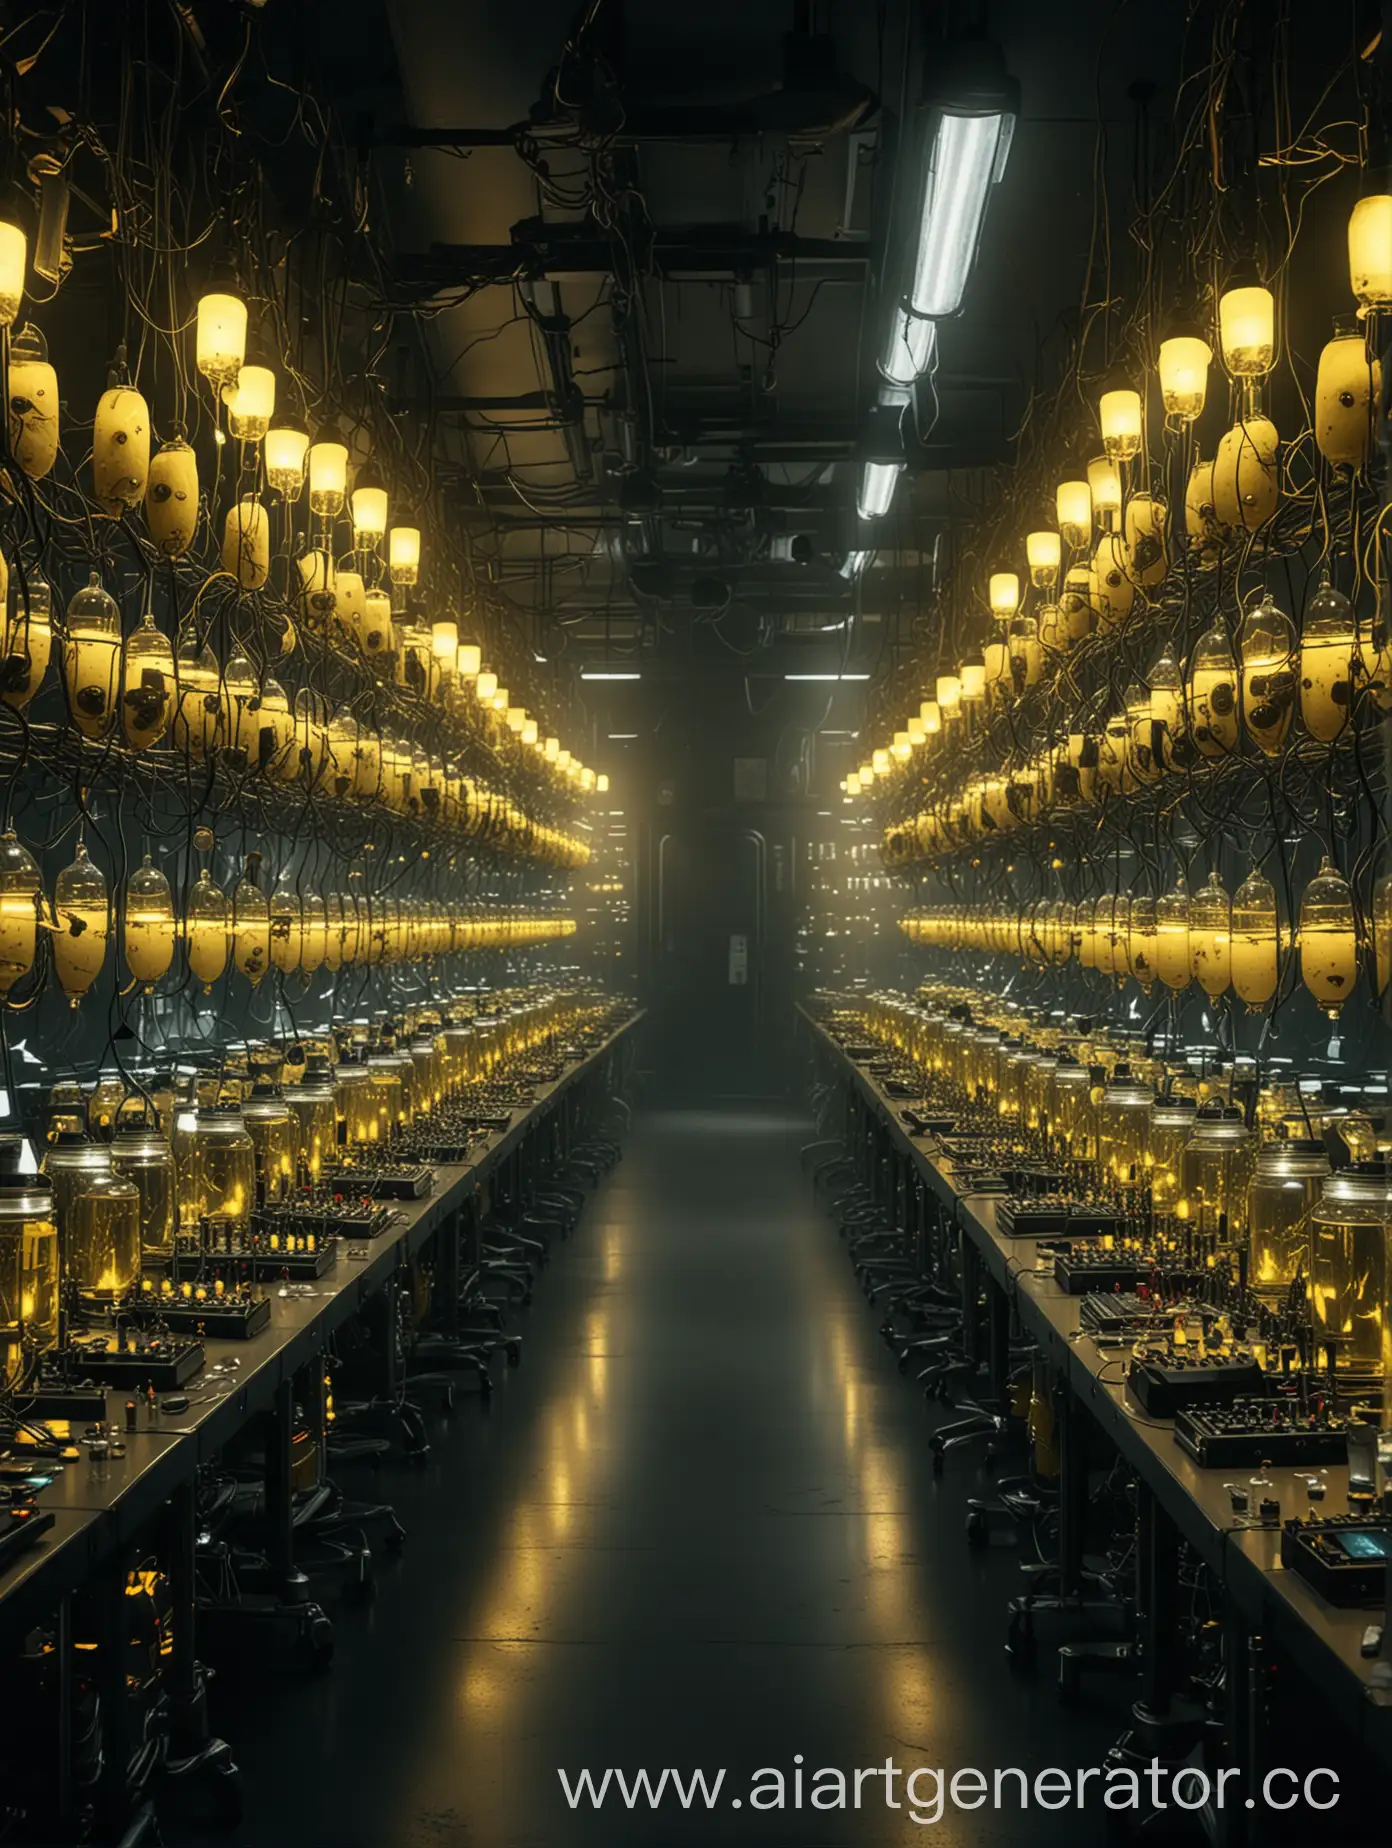 Огромная темная лаборатория, желтый свет, огромные стеклянные капсулы с монстрами, провода, компьютеры, фонари, шприцы, извлечение ДНК. 